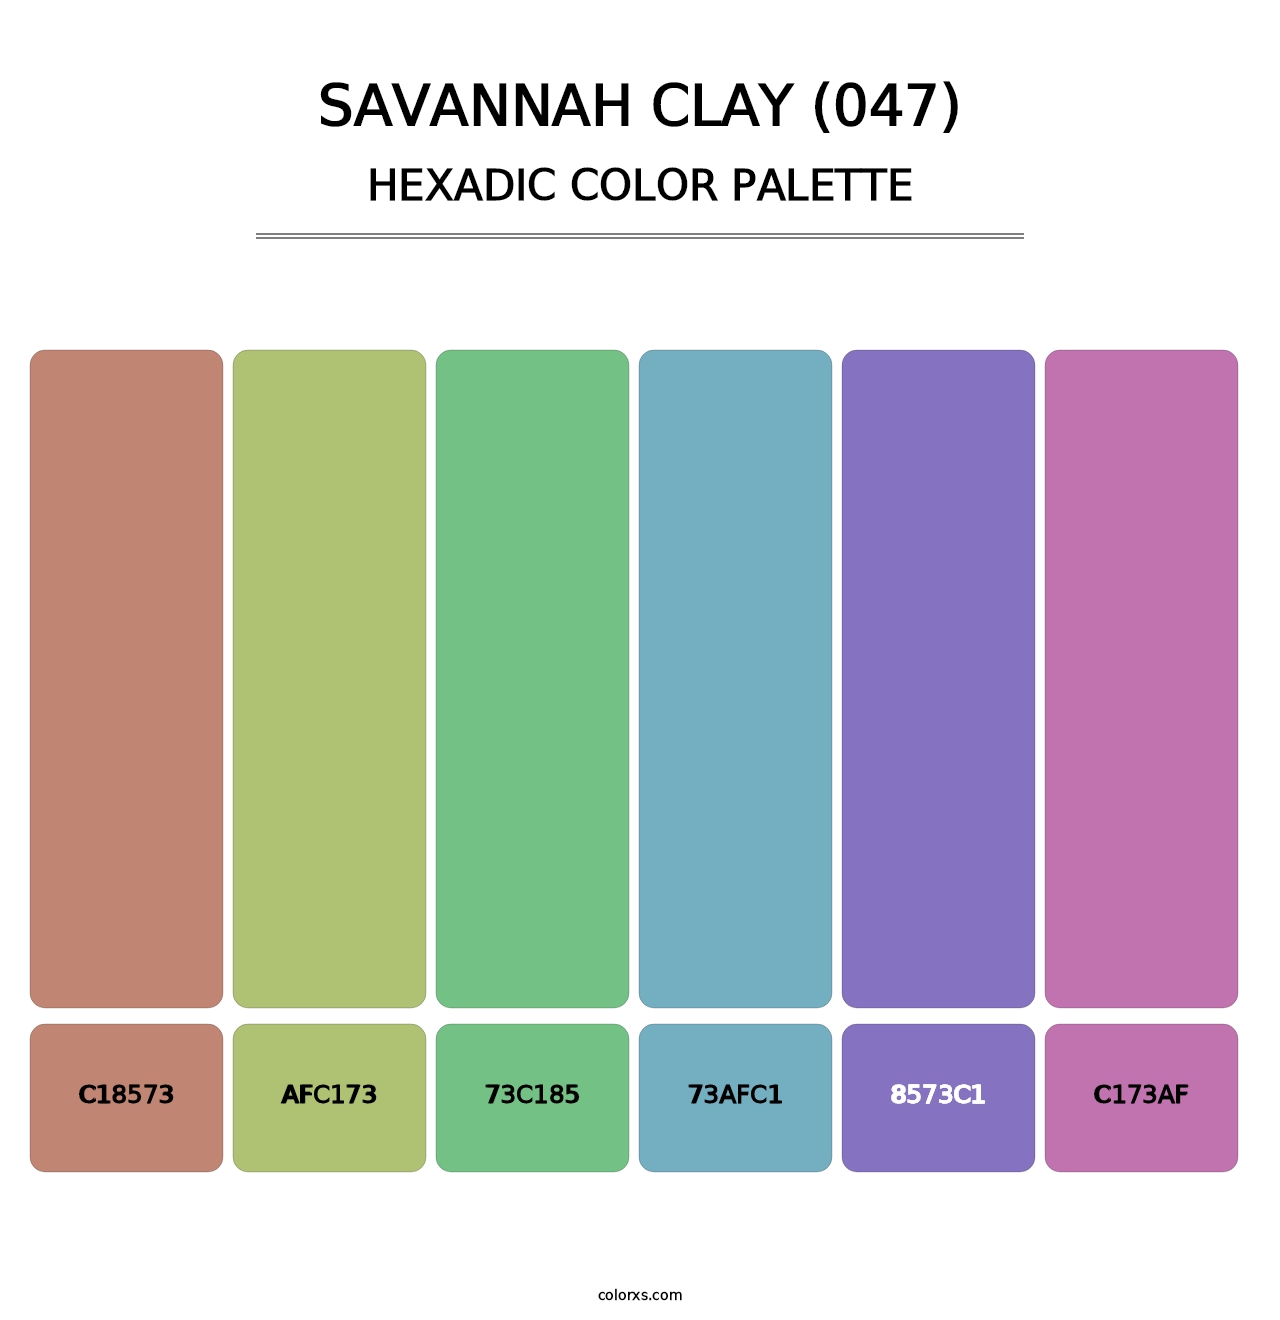 Savannah Clay (047) - Hexadic Color Palette